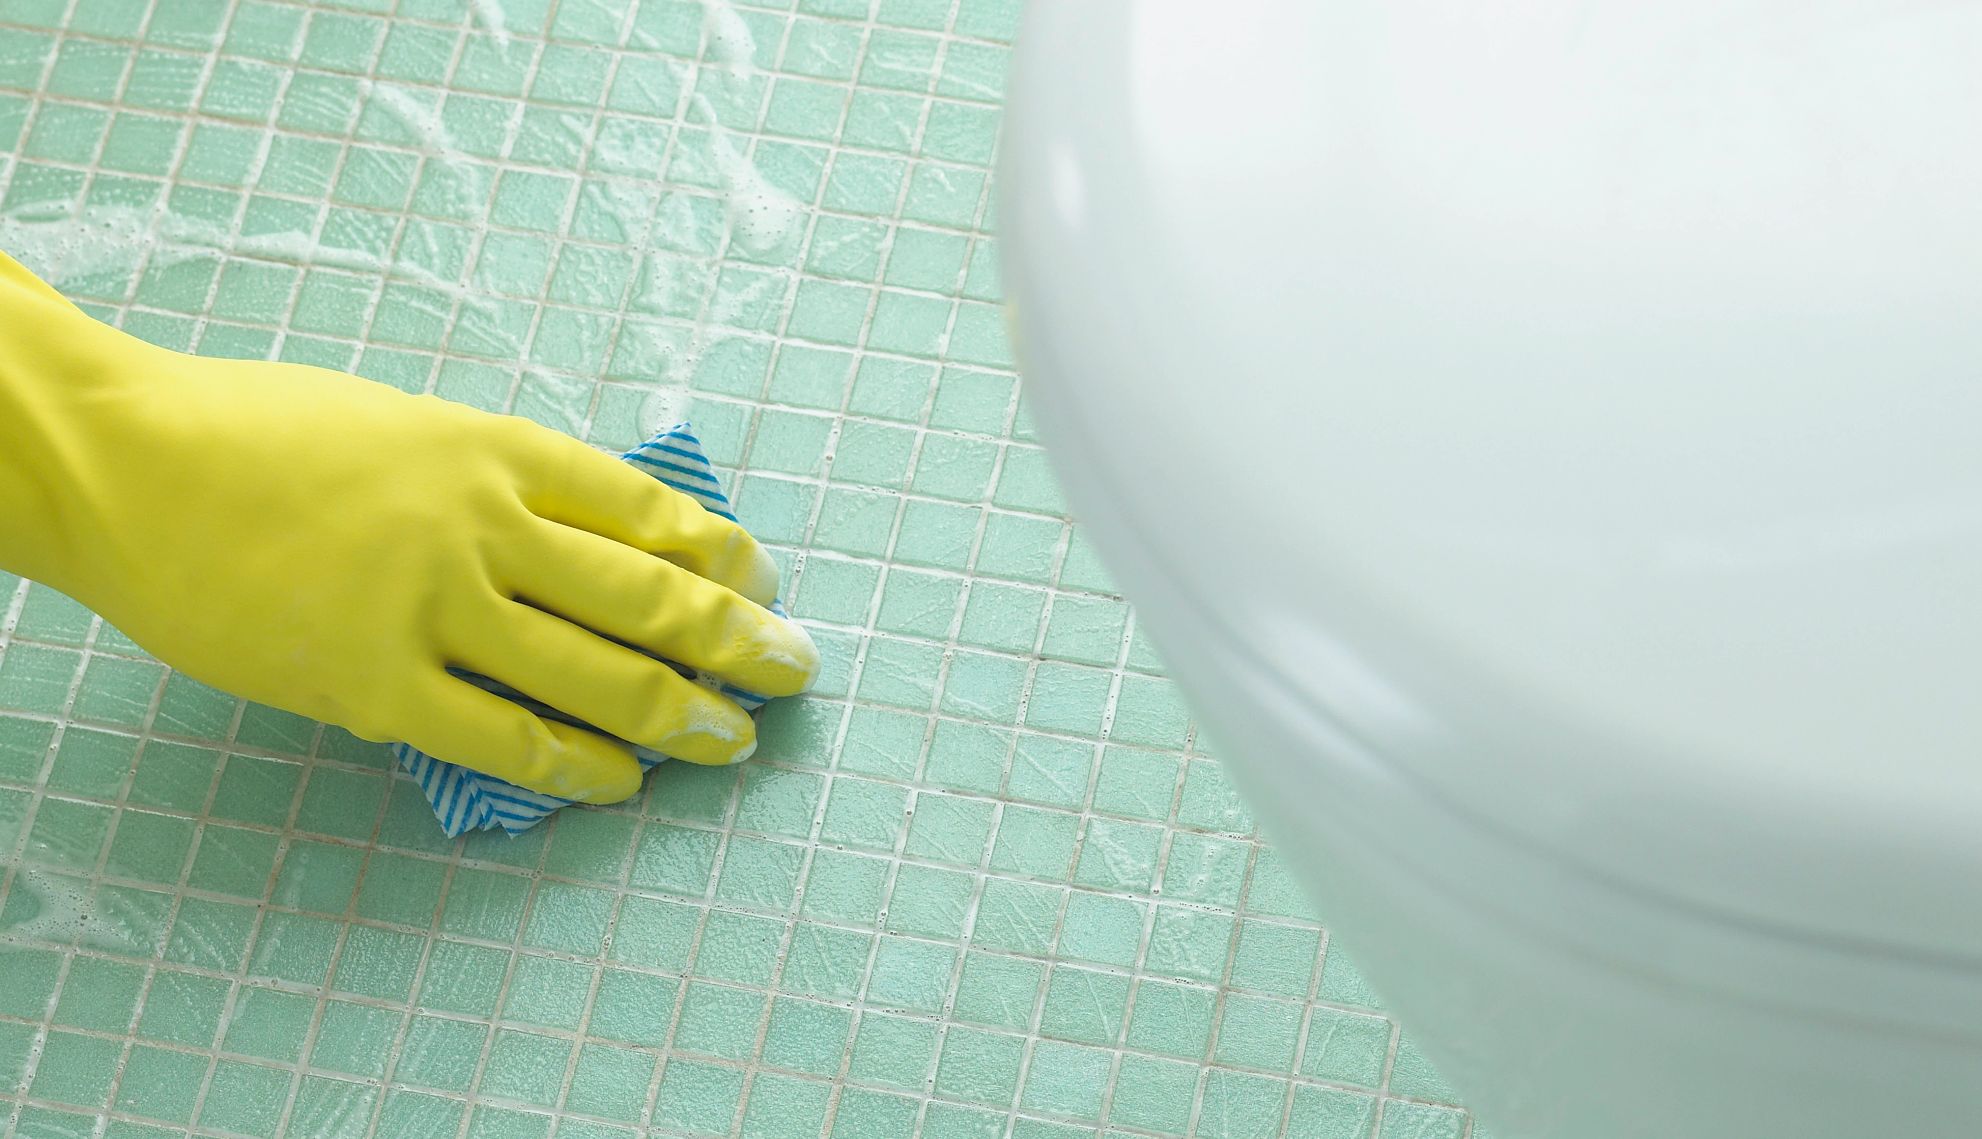 una mano limpiando el suelo de un cuarto de baño